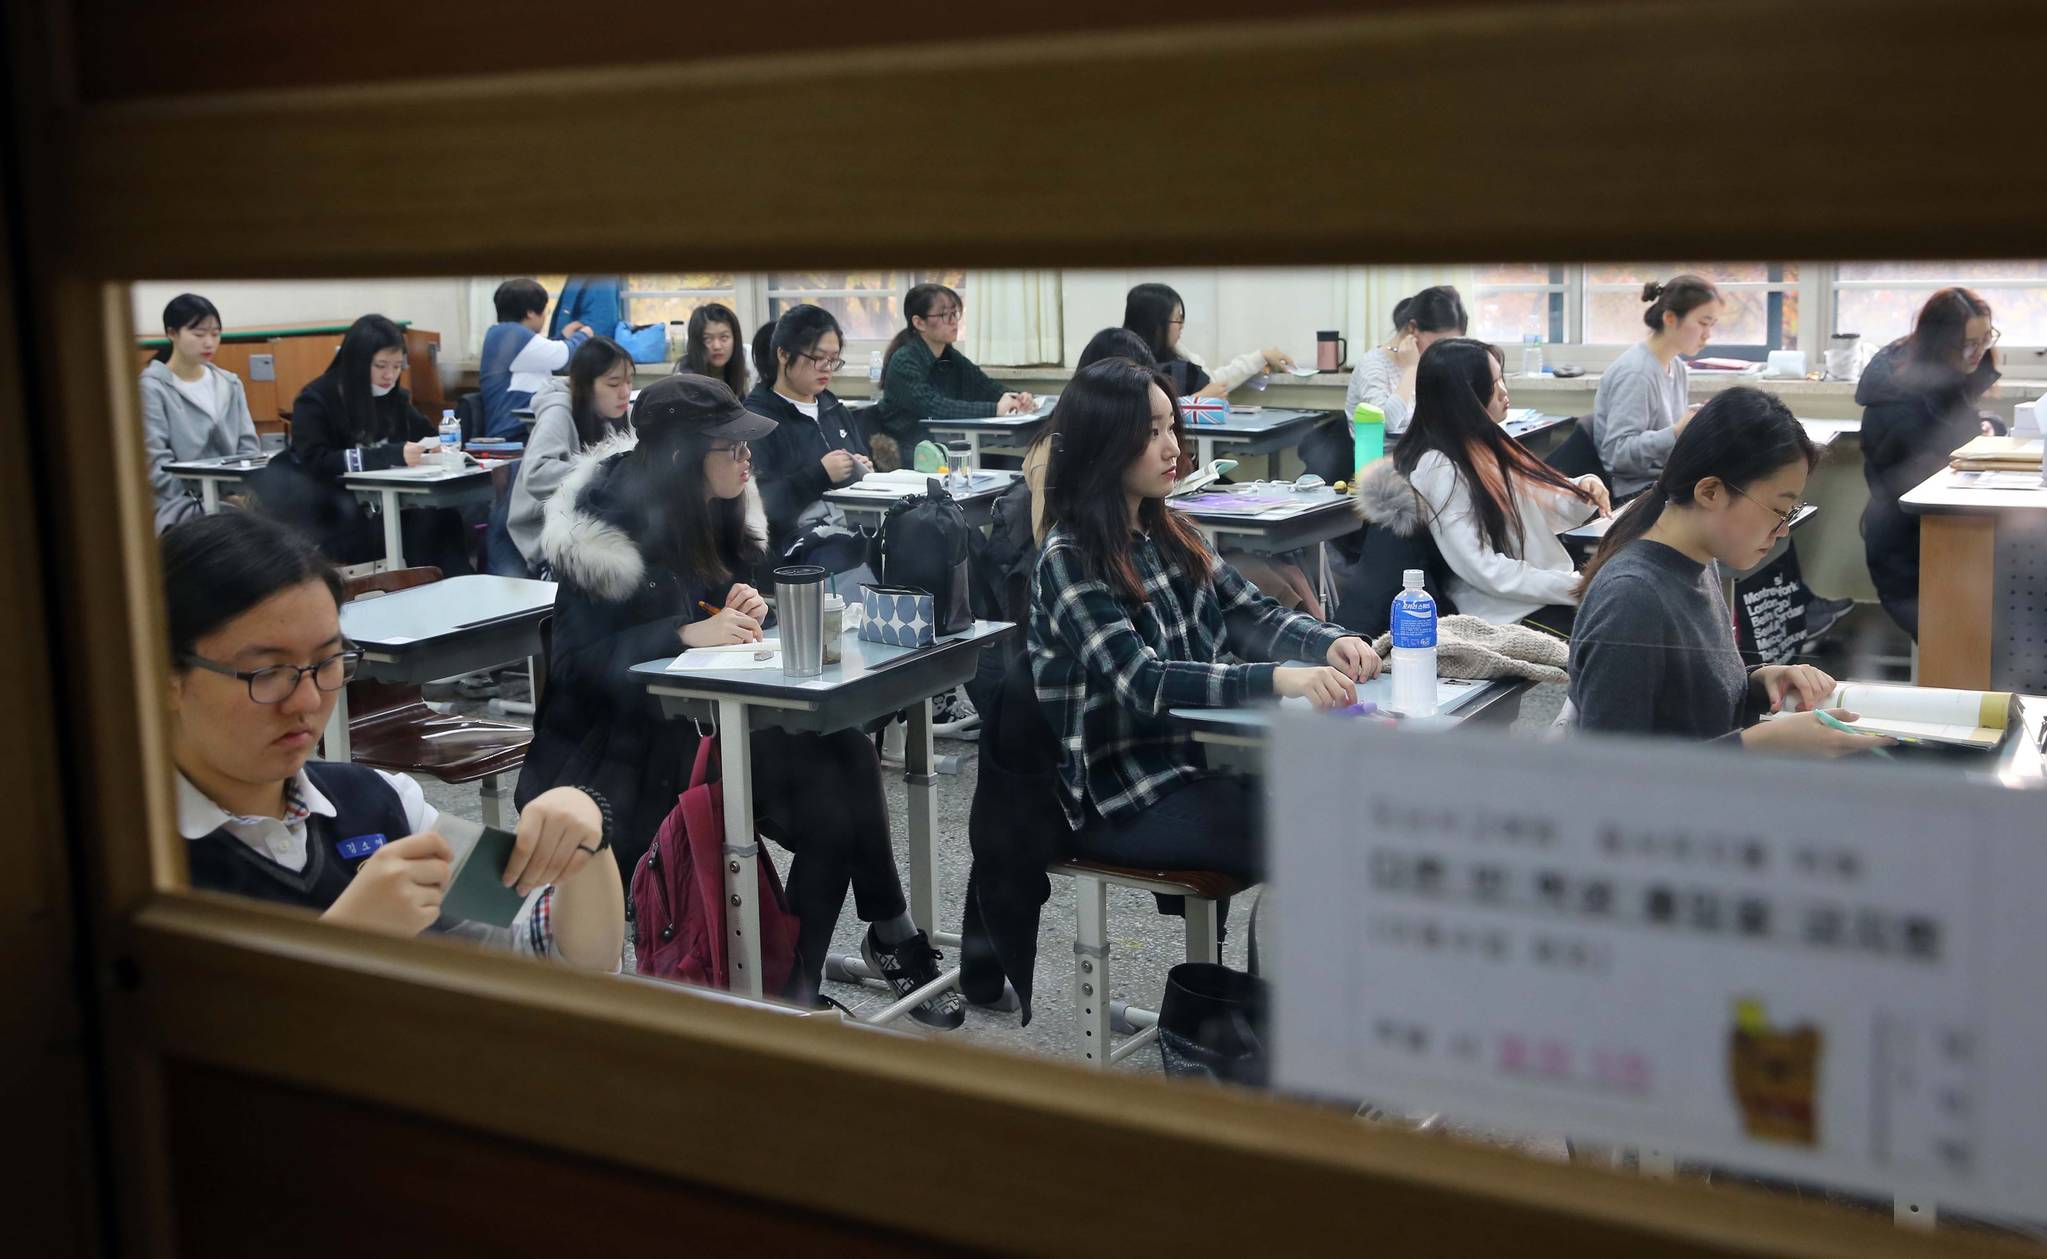 2017학년도 수능에 응시한 학생들이 지난해 11월 서울의 한 고등학교에서 시험지가 배포되기를 기다리고 있다. 영어와 한국사 외 과목까지 절대평가 확대가 논의되던 2021학년도 수능(현 중 3)은 기존 방식대로 치르기로 했다. 교육부는 대입 제도 개선 전반을 검토하면서 2022학년도 수능 개편안을 내년 8월까지 결정한다는 계획이다. 김상선 기자